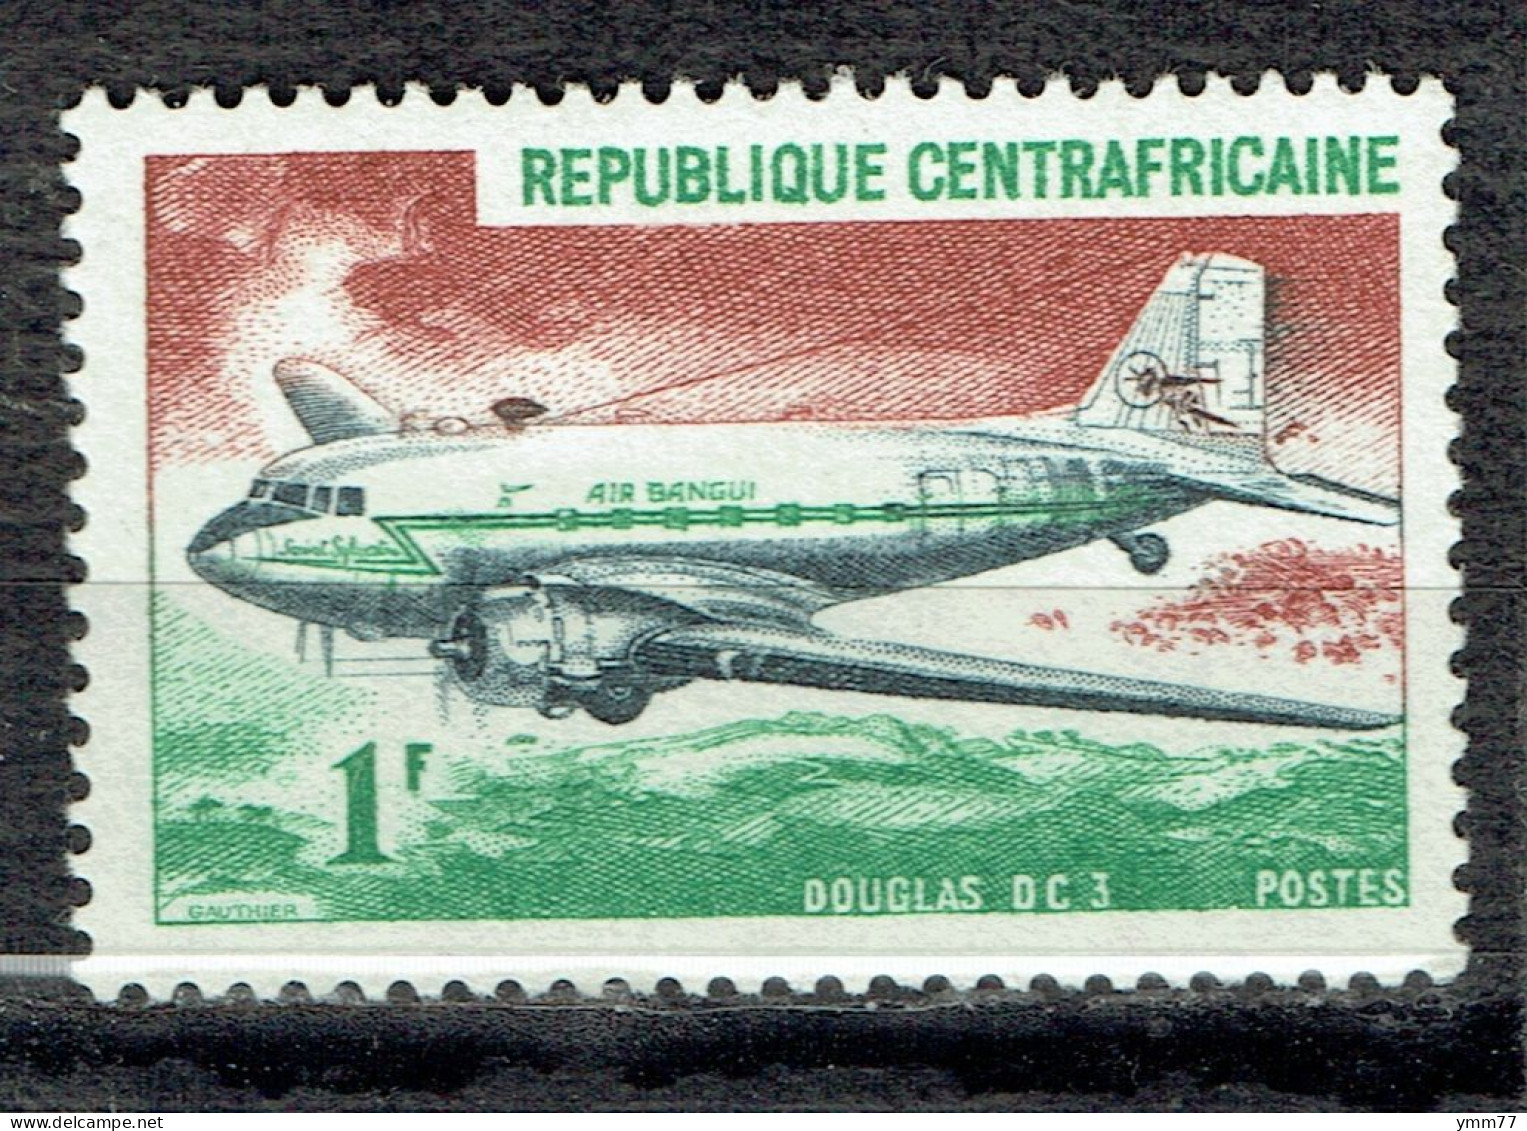 Avion : Douglas DC-3 - República Centroafricana